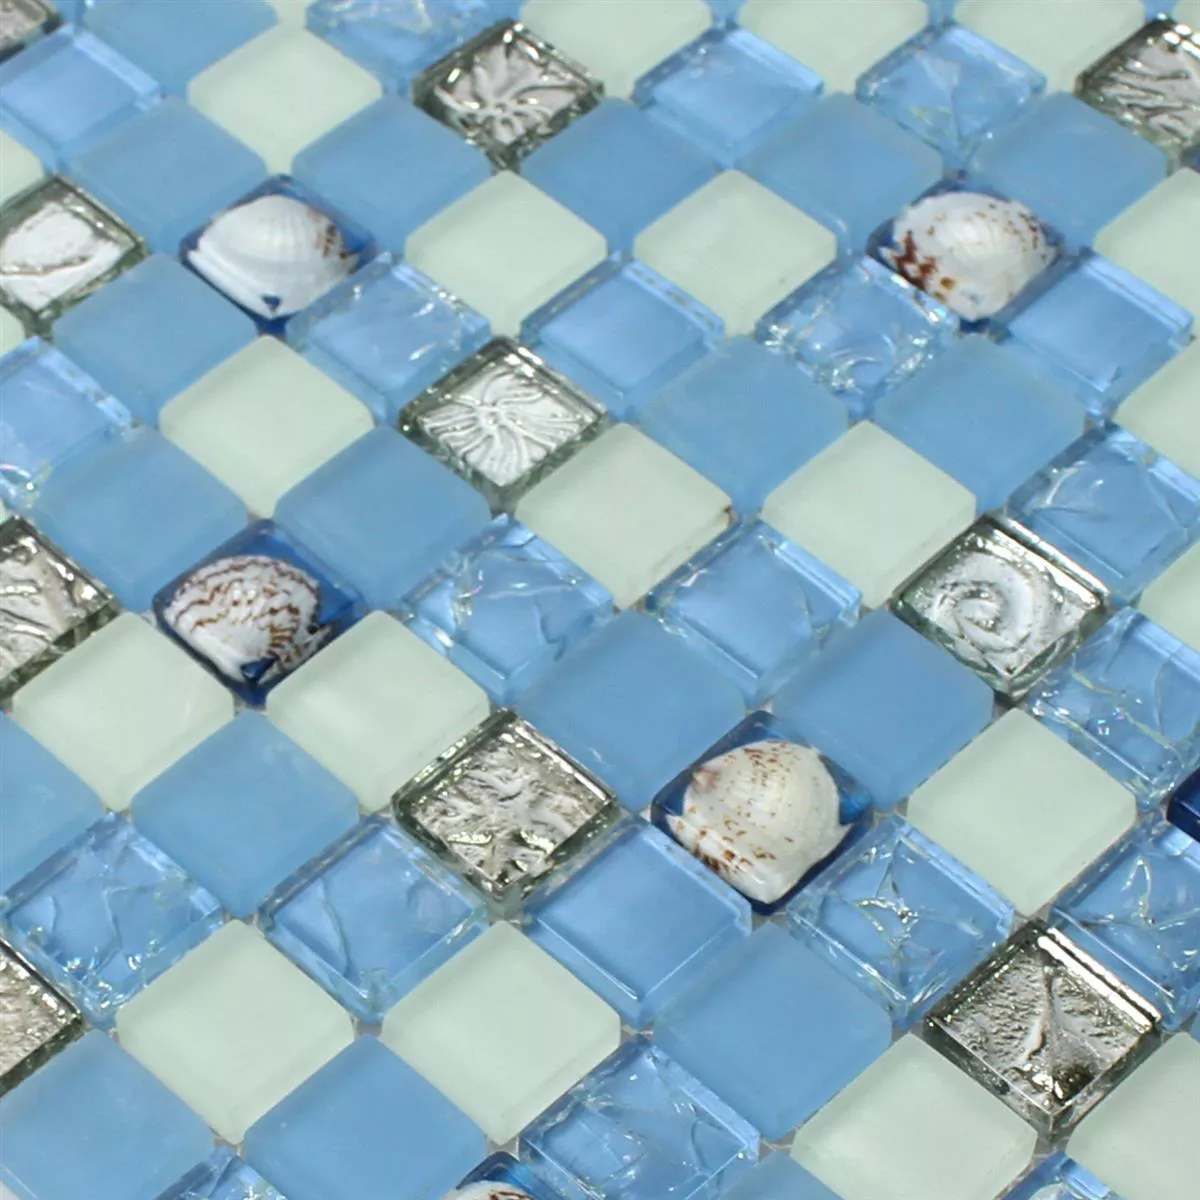 Mosaic Tiles Glass Shell Blue Mix